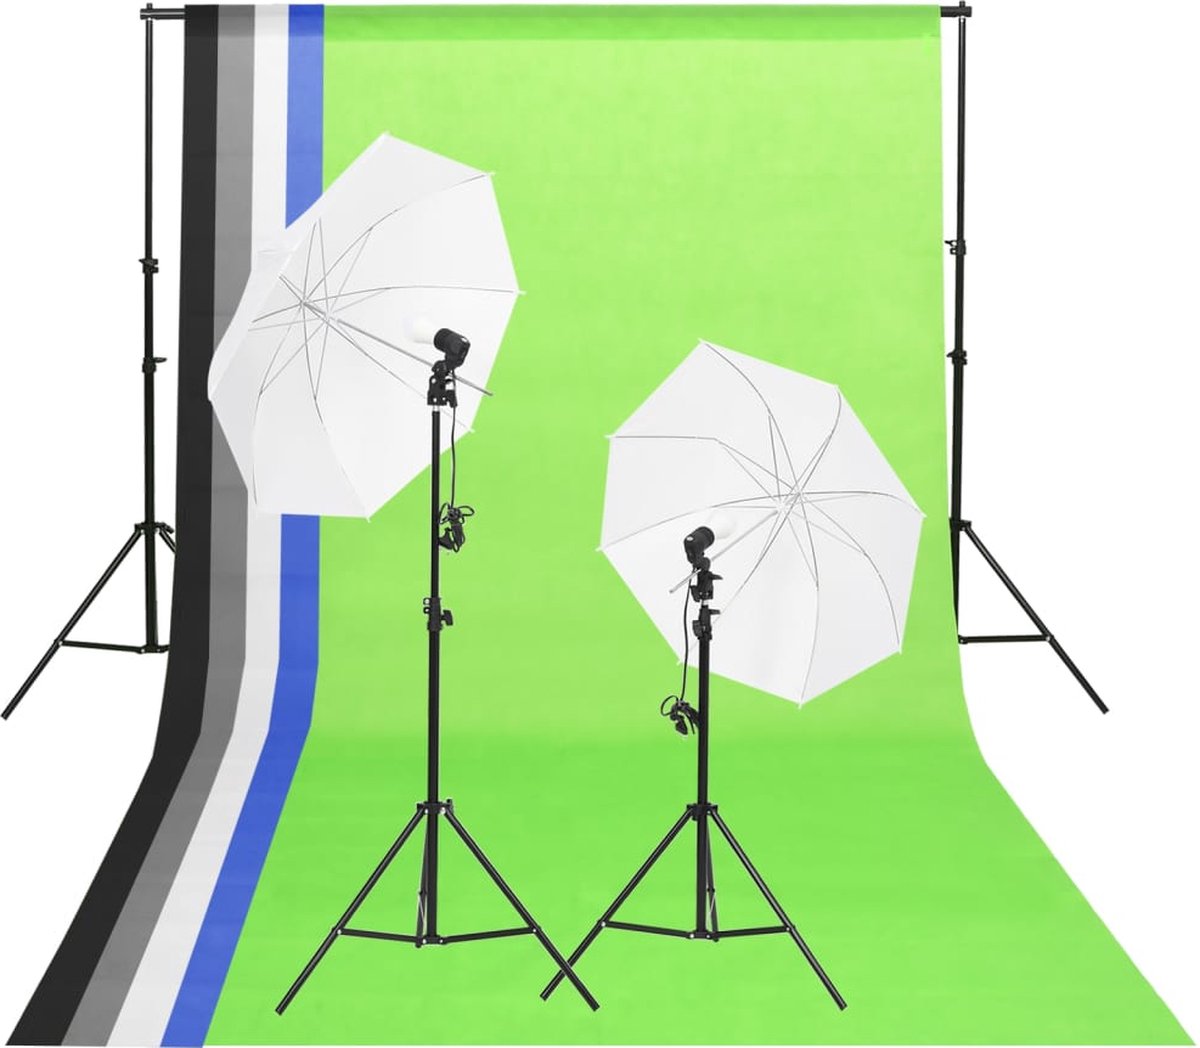 VidaLife Studioverlichtingsset met achtergronden en paraplu's